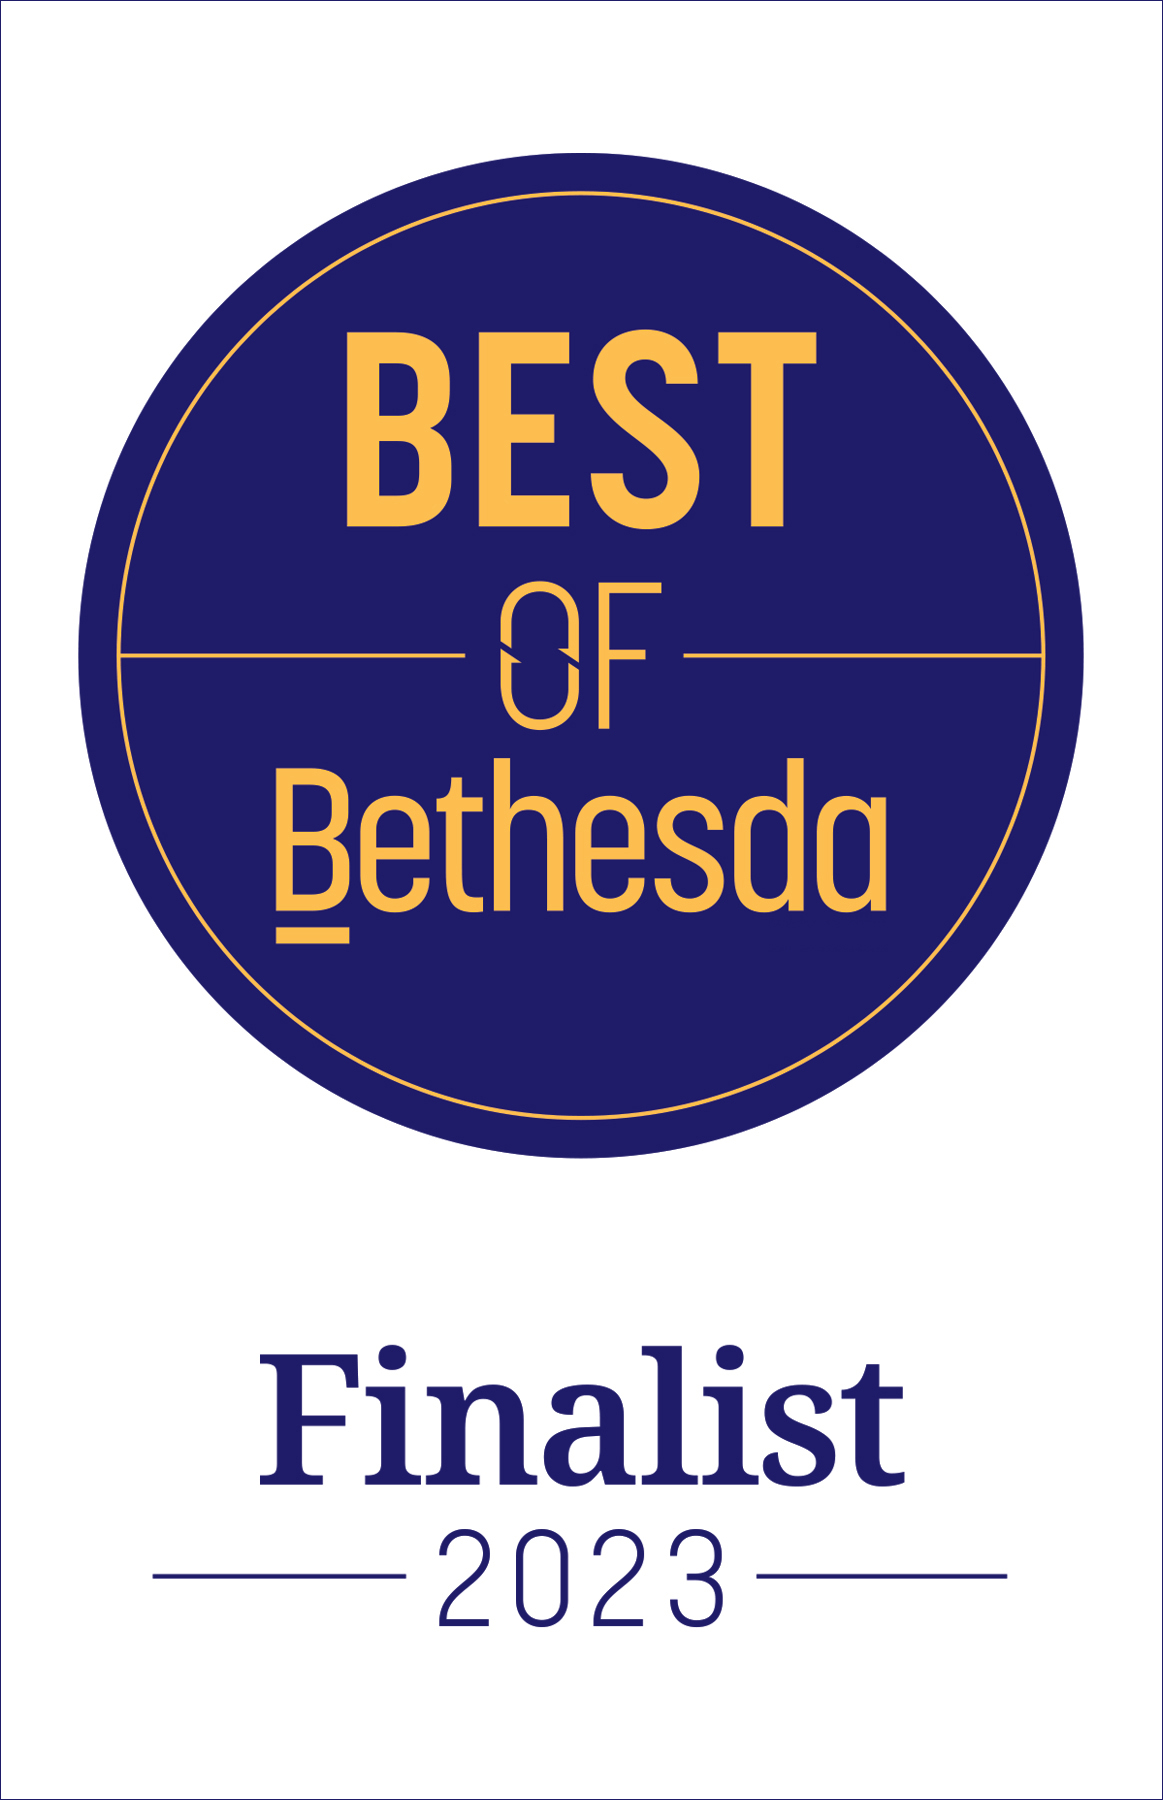 Best of Bethesda Finalist icon white blue background dark blue text